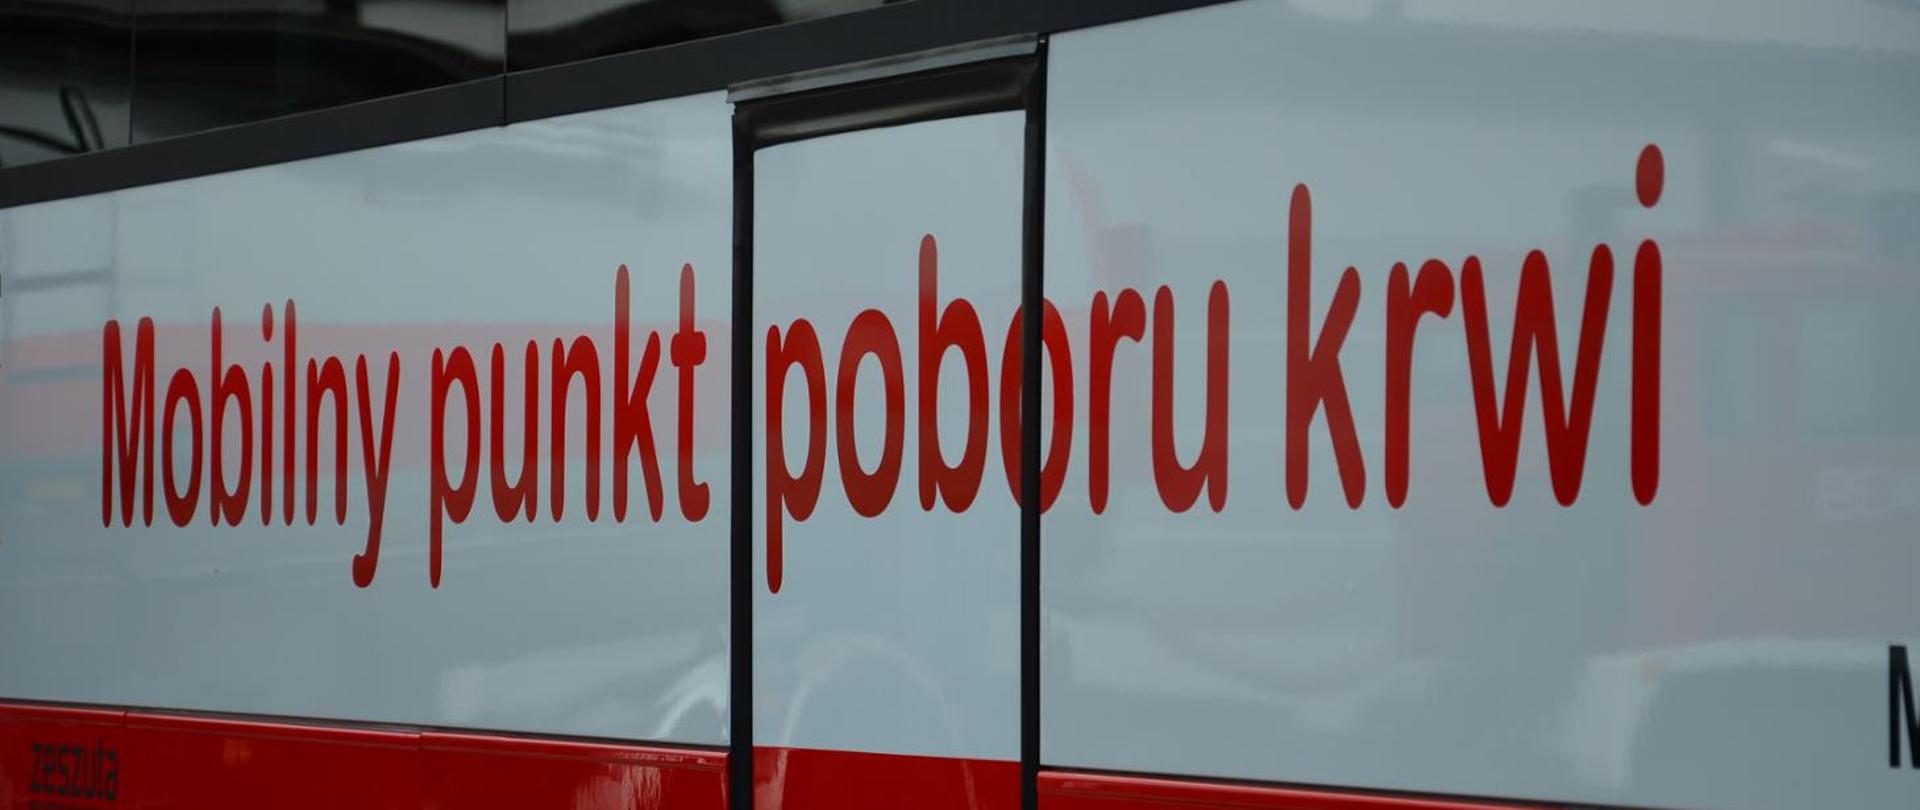 Na zdjęciu przedstawiony jest bok autobusu z napisem "Mobilny punkt poboru krwi"